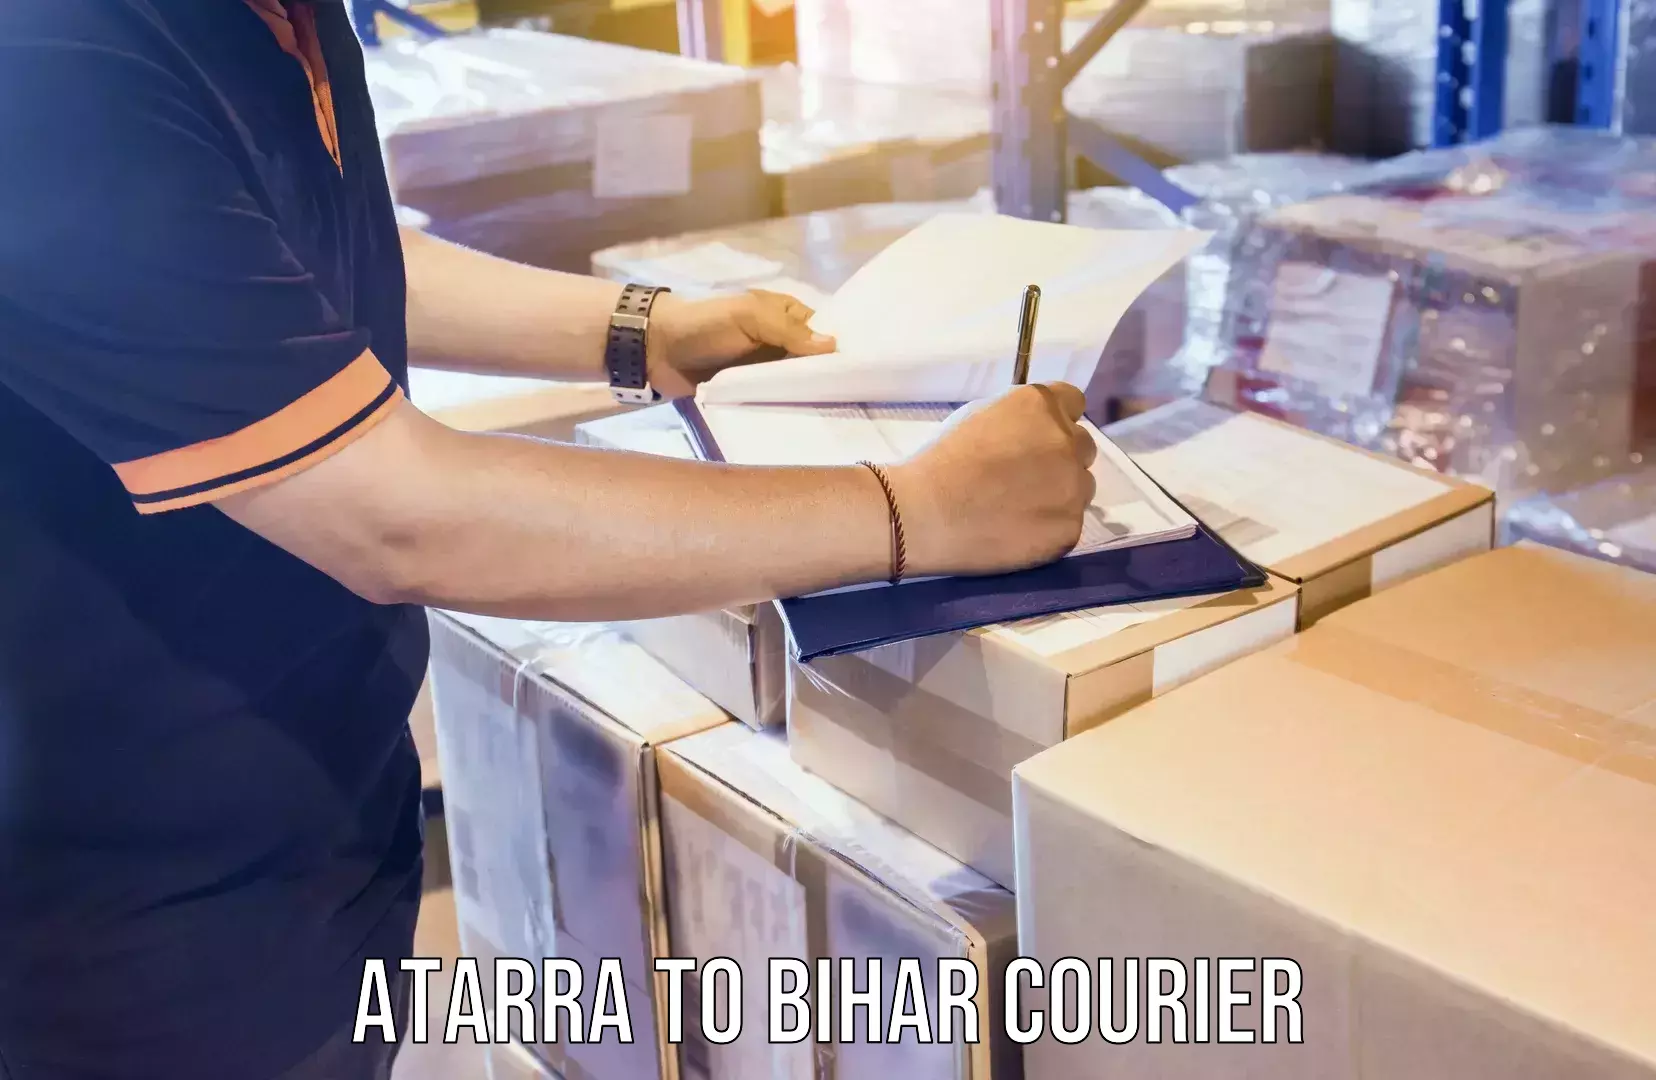 Express logistics service Atarra to Bihar